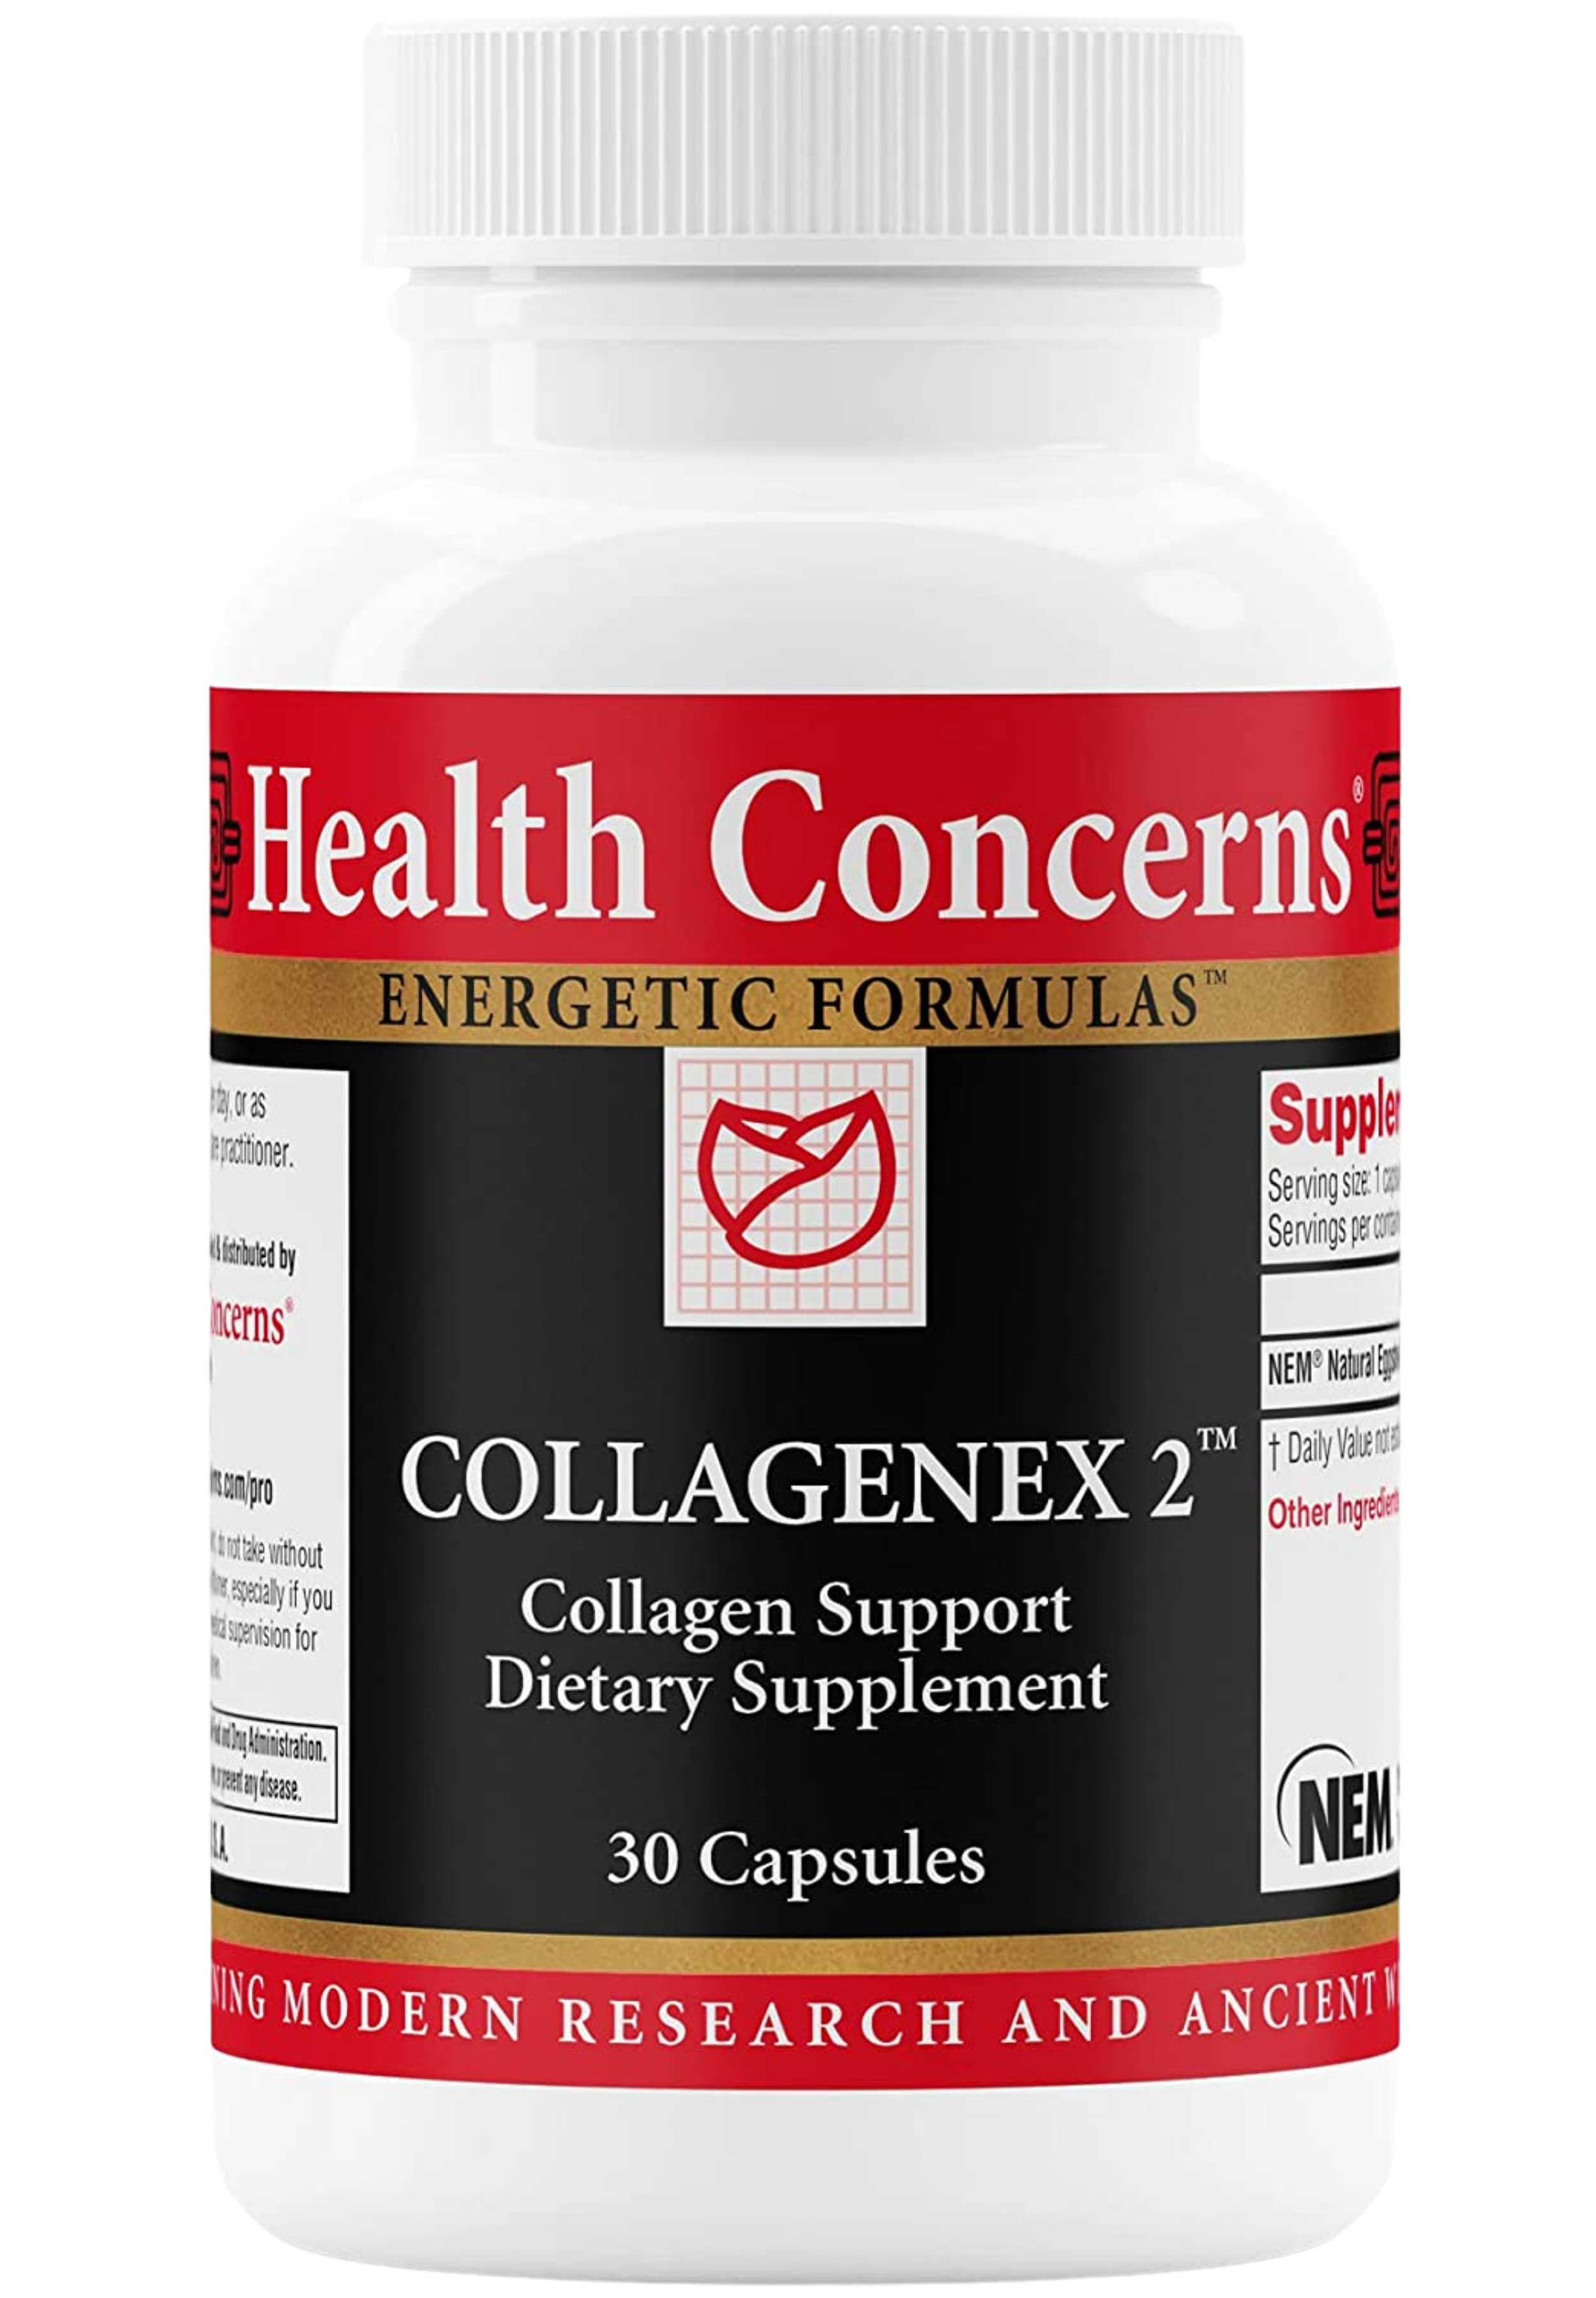 Health Concerns Collagenex 2